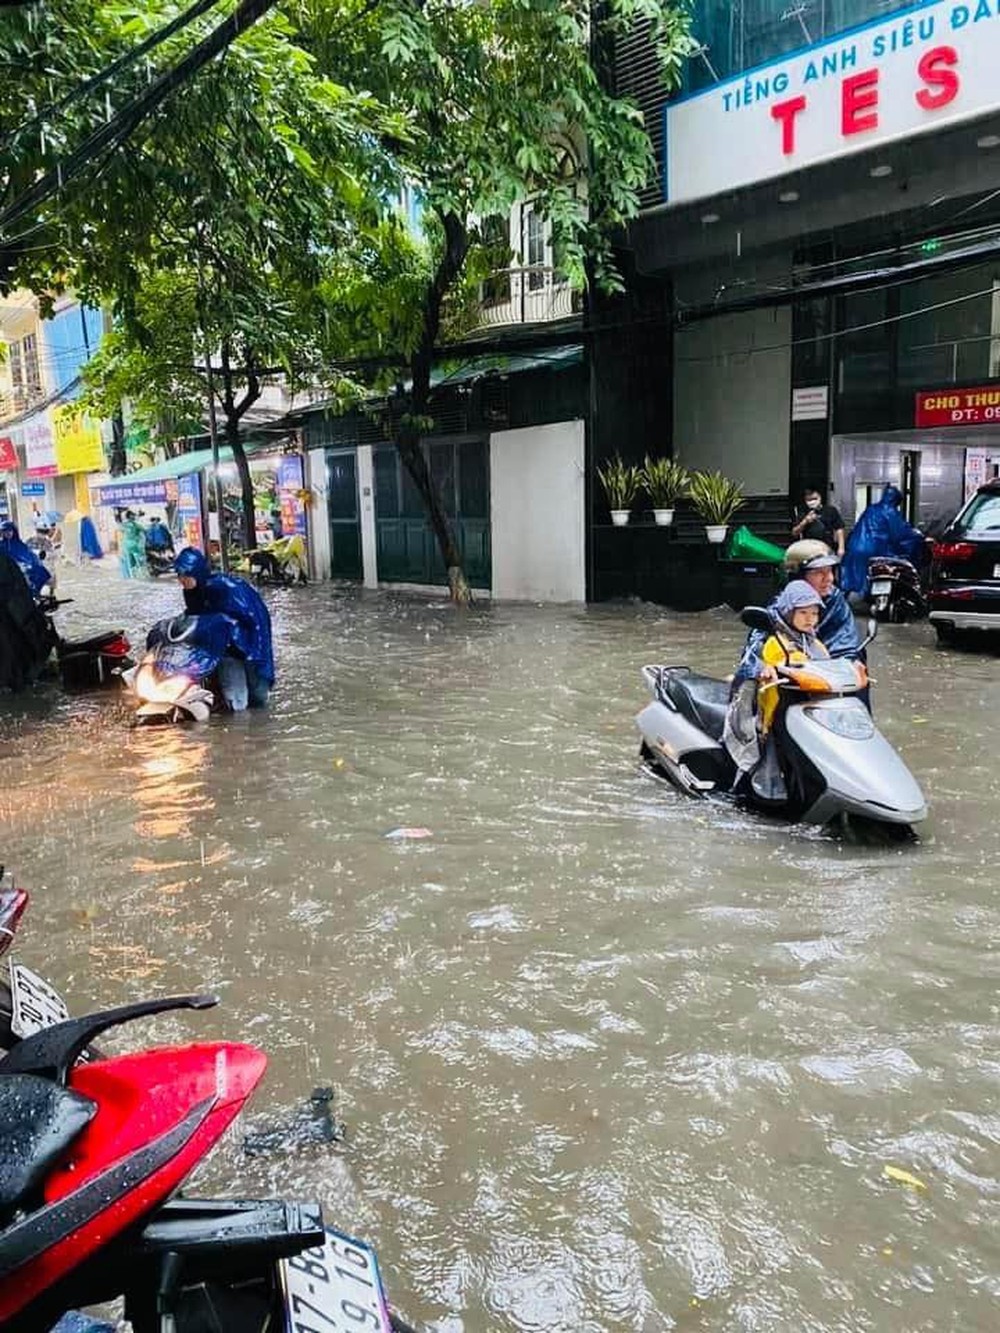 Đường Hà Nội có nơi ngập gần 1m trong sáng nay, người dân ngồi lên nóc xe chờ nước rút - Ảnh 4.